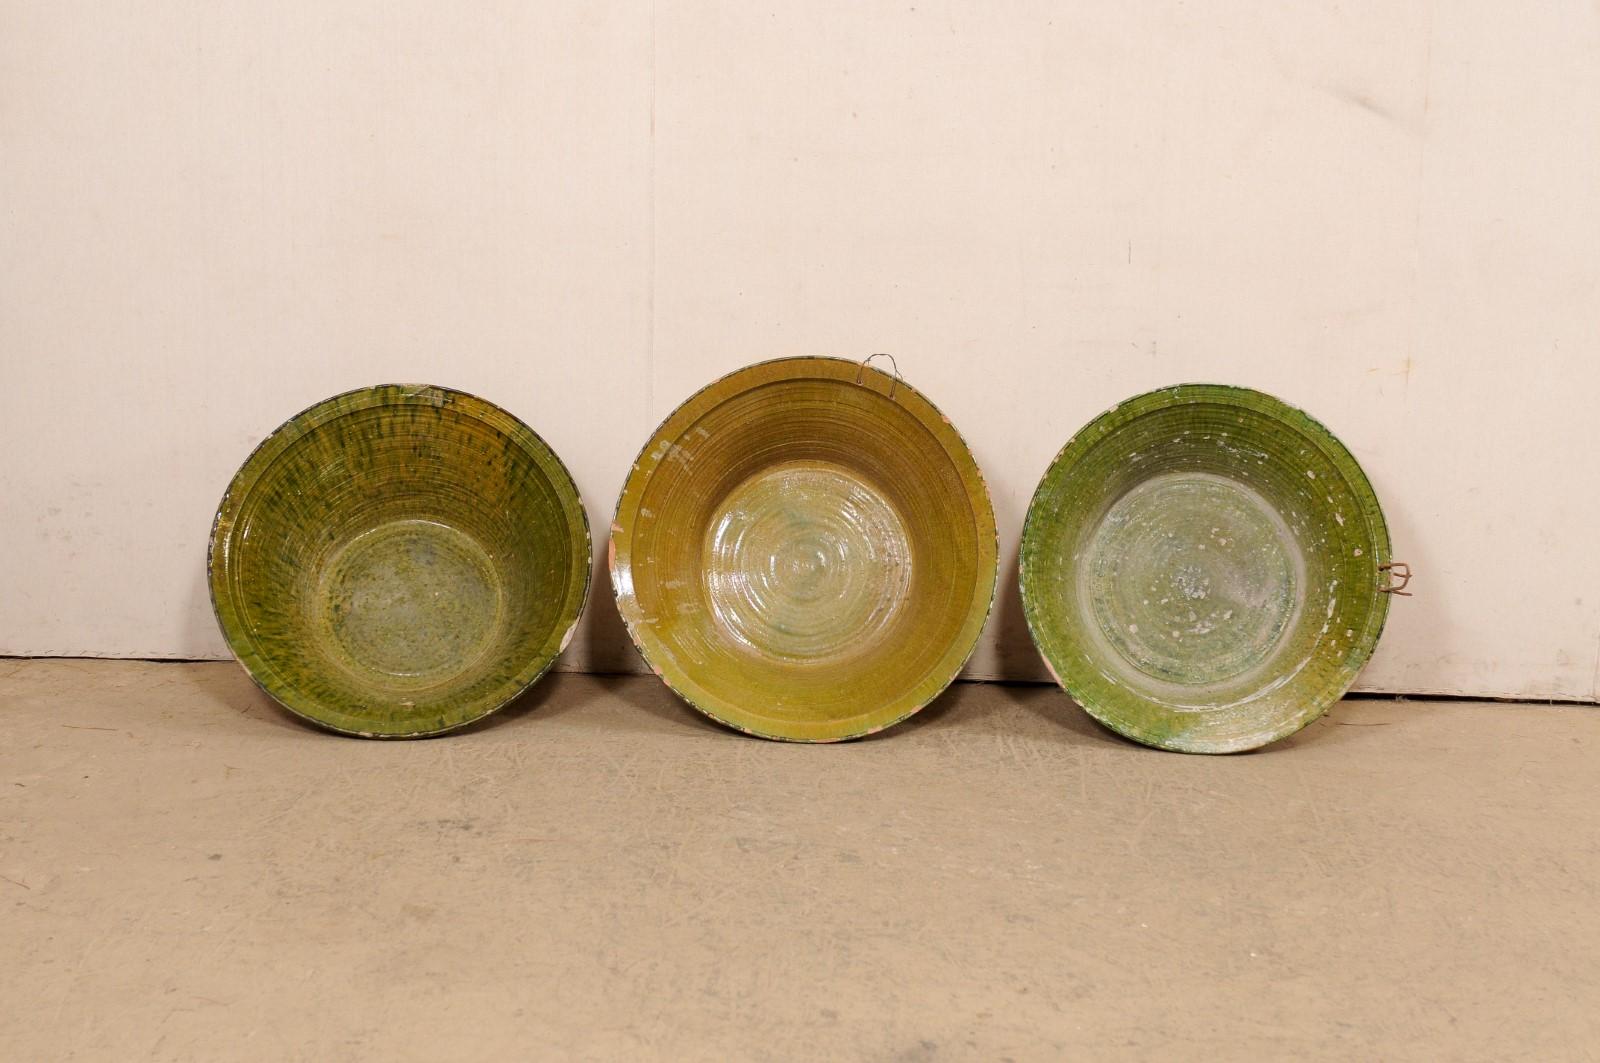 Ensemble espagnol de trois bols en terre cuite vernissée du début du 20e siècle. Cette collection de bols anciens d'Espagne est de forme ronde, la partie la plus large se situant au niveau de la lèvre supérieure, et se rétrécissant progressivement